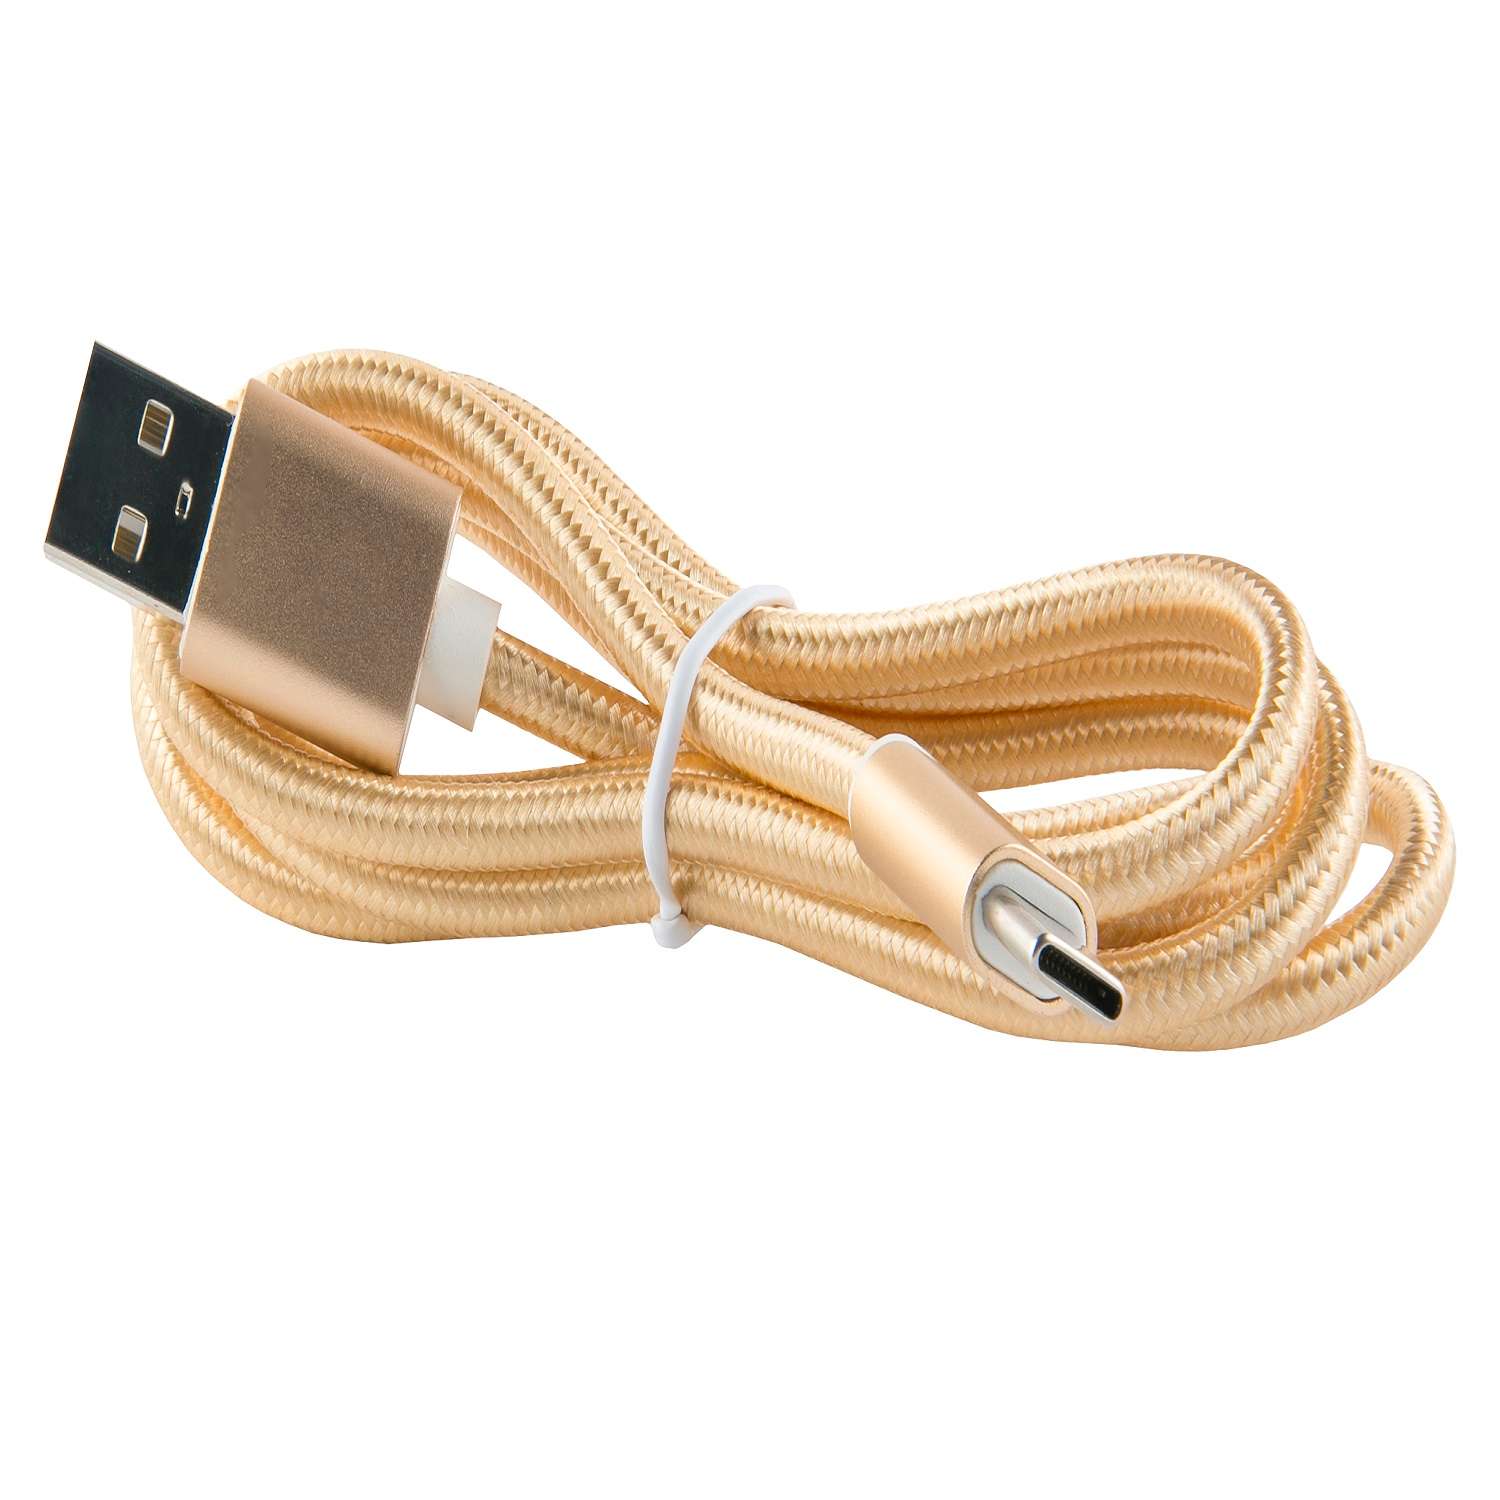 Дата-кабель RedLine USB - Type-C 3.0 нейлоновая оплетка золотой - фото 1